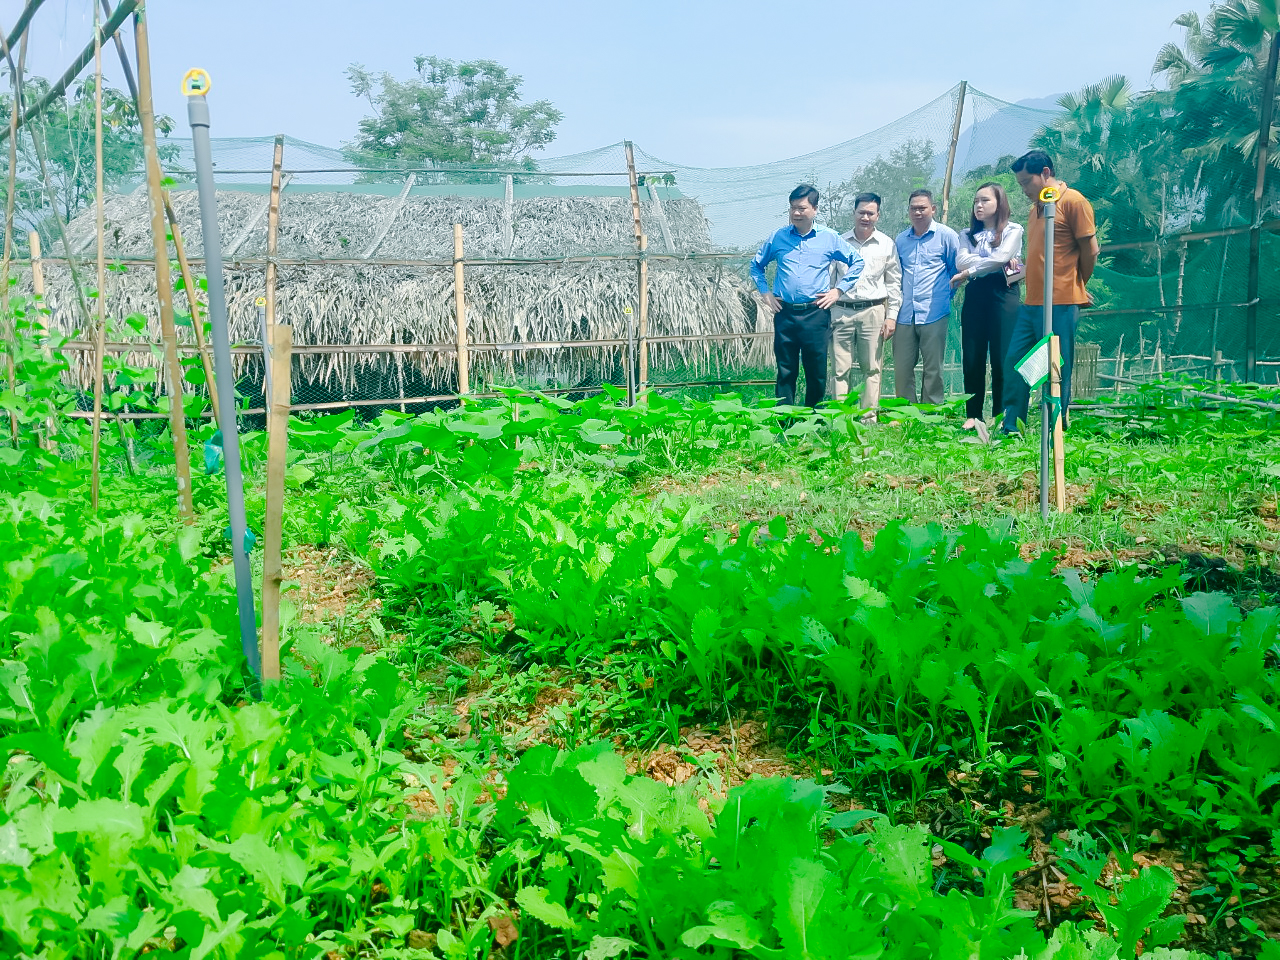 Trường Đại học Hồng Đức hỗ trợ cư dân vùng biên giới tỉnh Thanh Hóa phát triển sinh kế qua mô hình: Vườn rau hữu cơ sử dụng phân ủ từ chế phẩm sinh học tự làm phù hợp với địa hình vùng cao